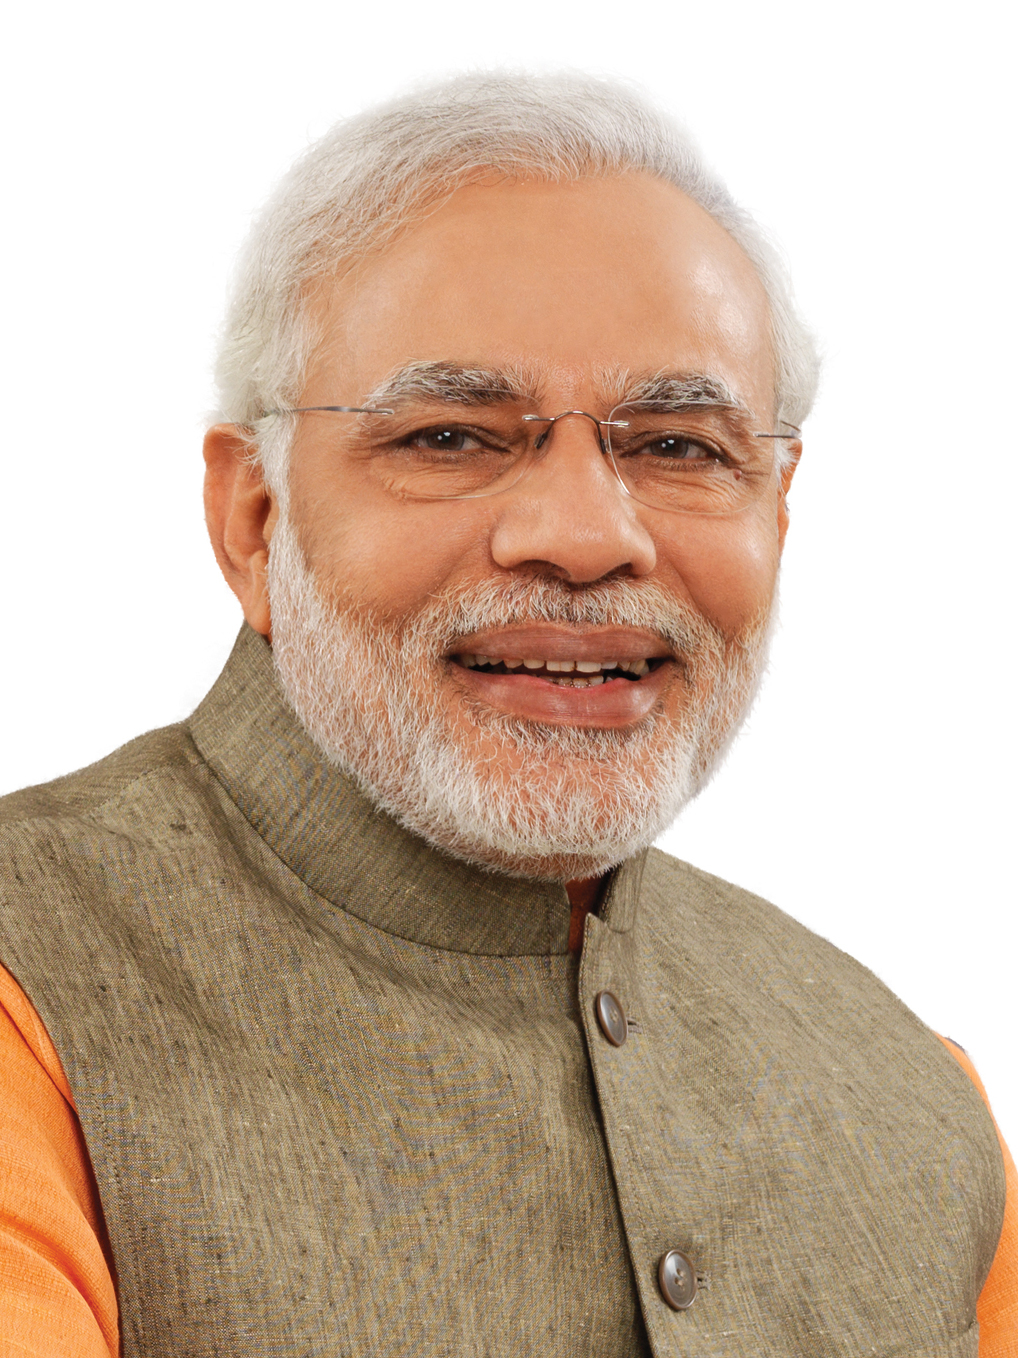 Prime Minister of India Narendra Modi